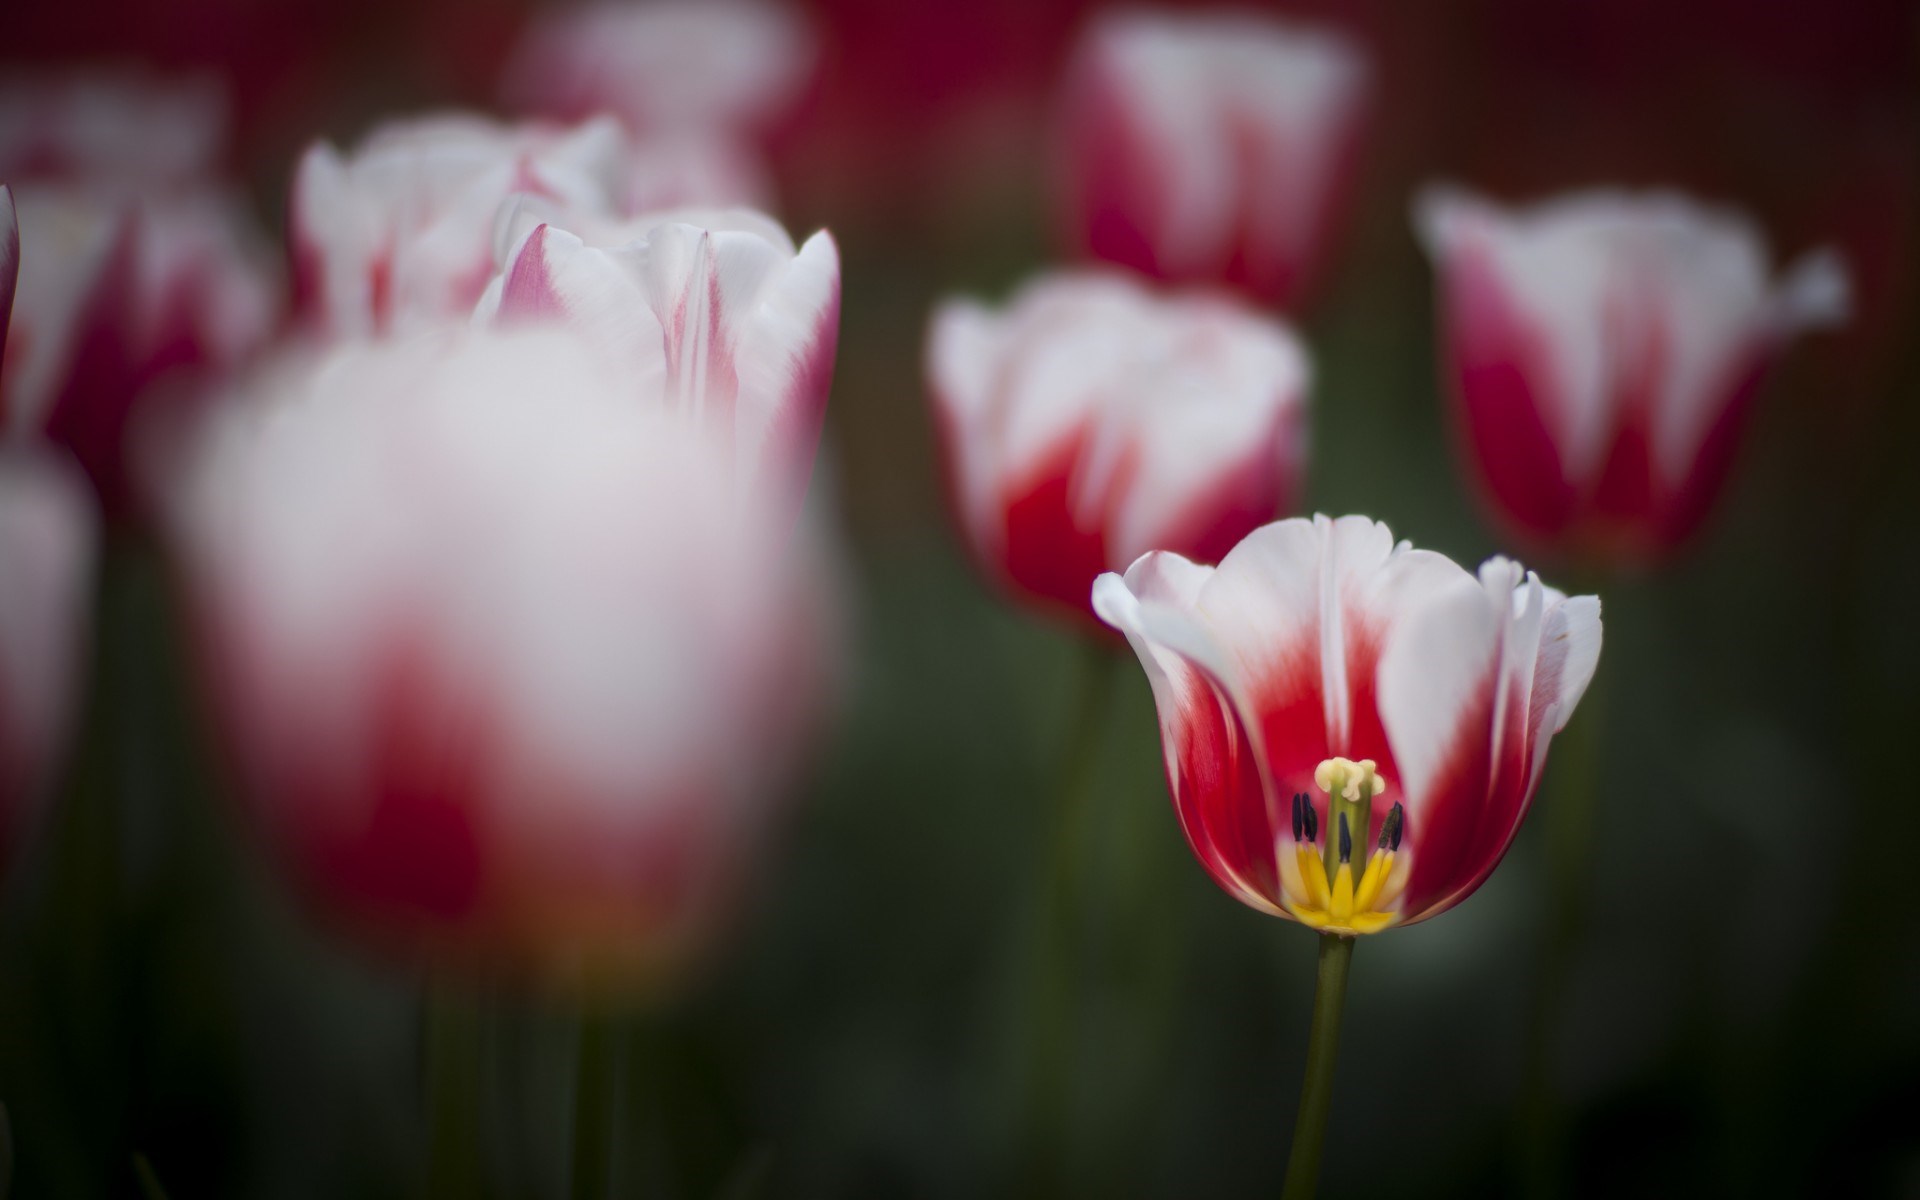 printemps nature fond d'écran en direct,fleur,plante à fleurs,pétale,tulipe,rouge